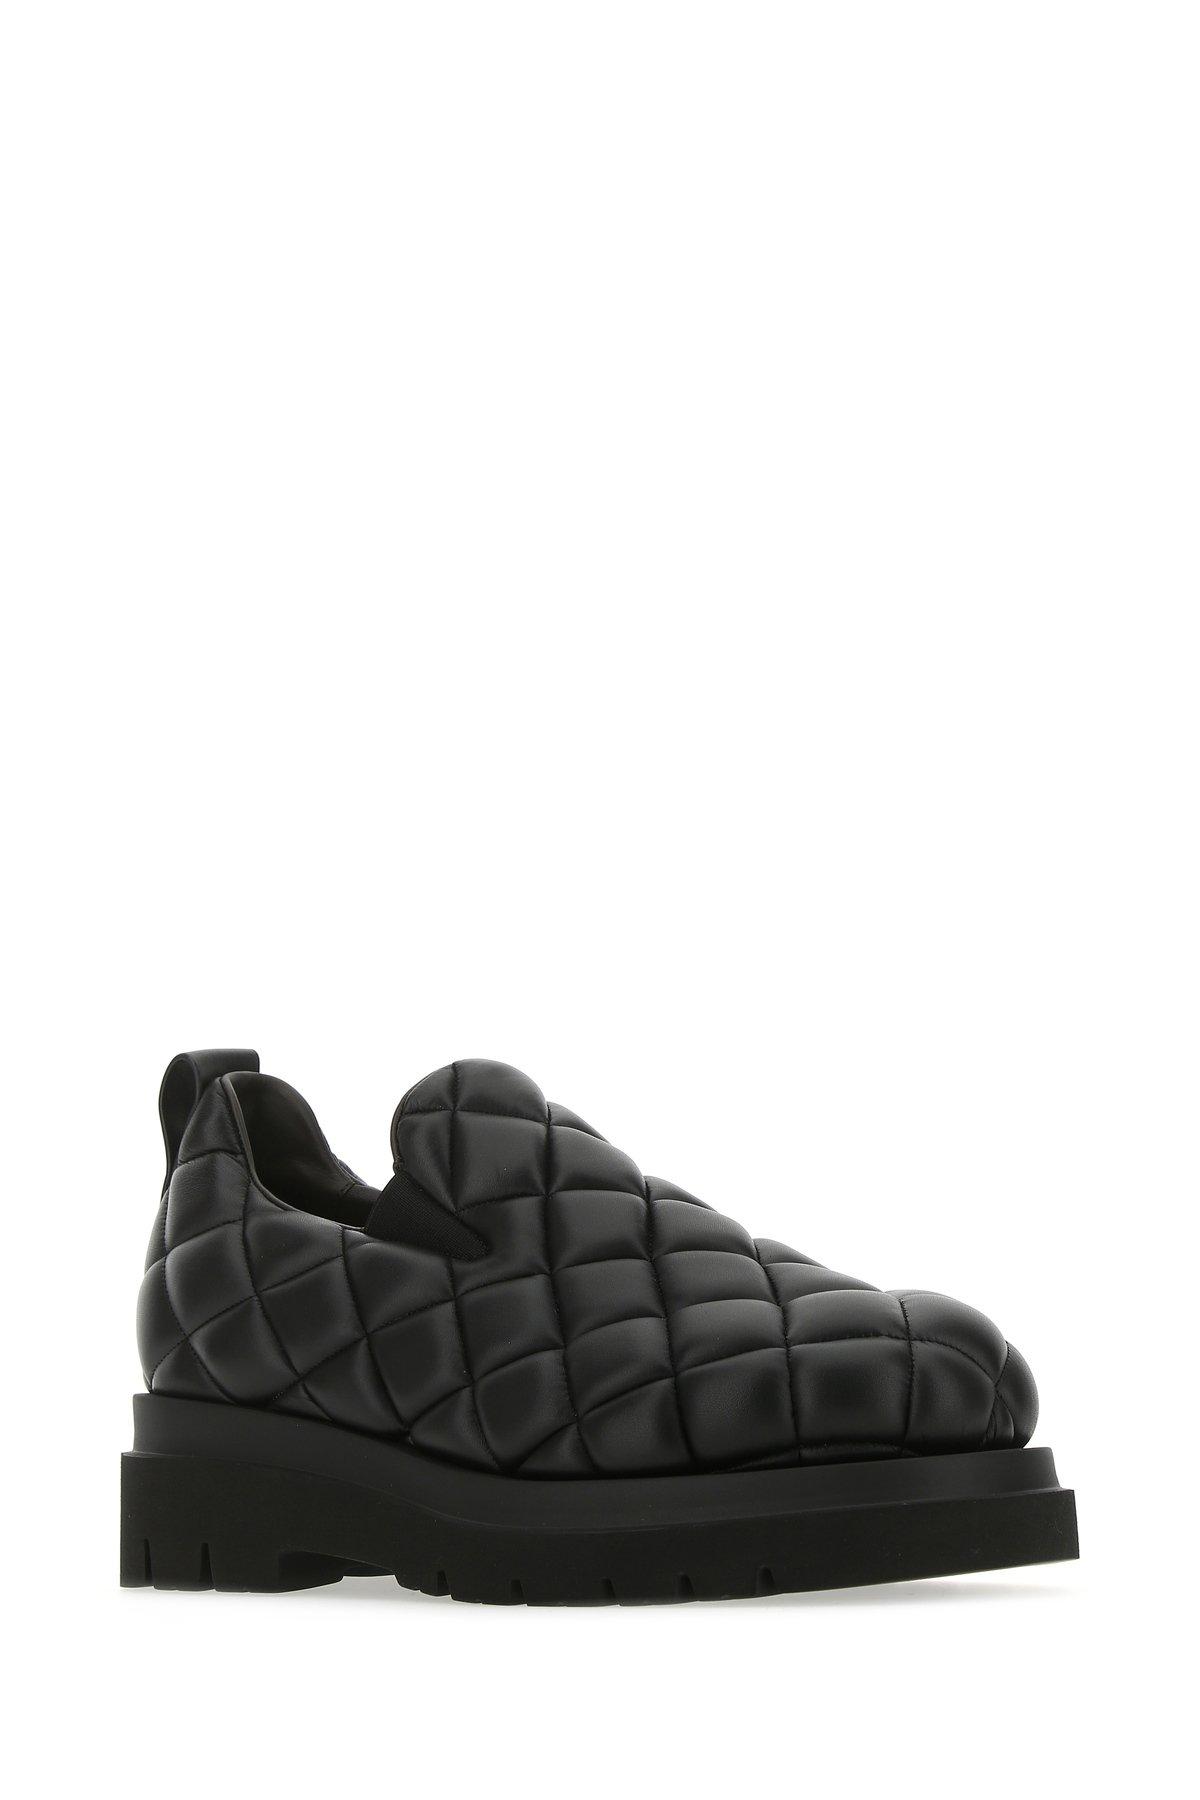 Bottega Veneta Leather Quilted Slip On Shoes in Black for Men - Lyst